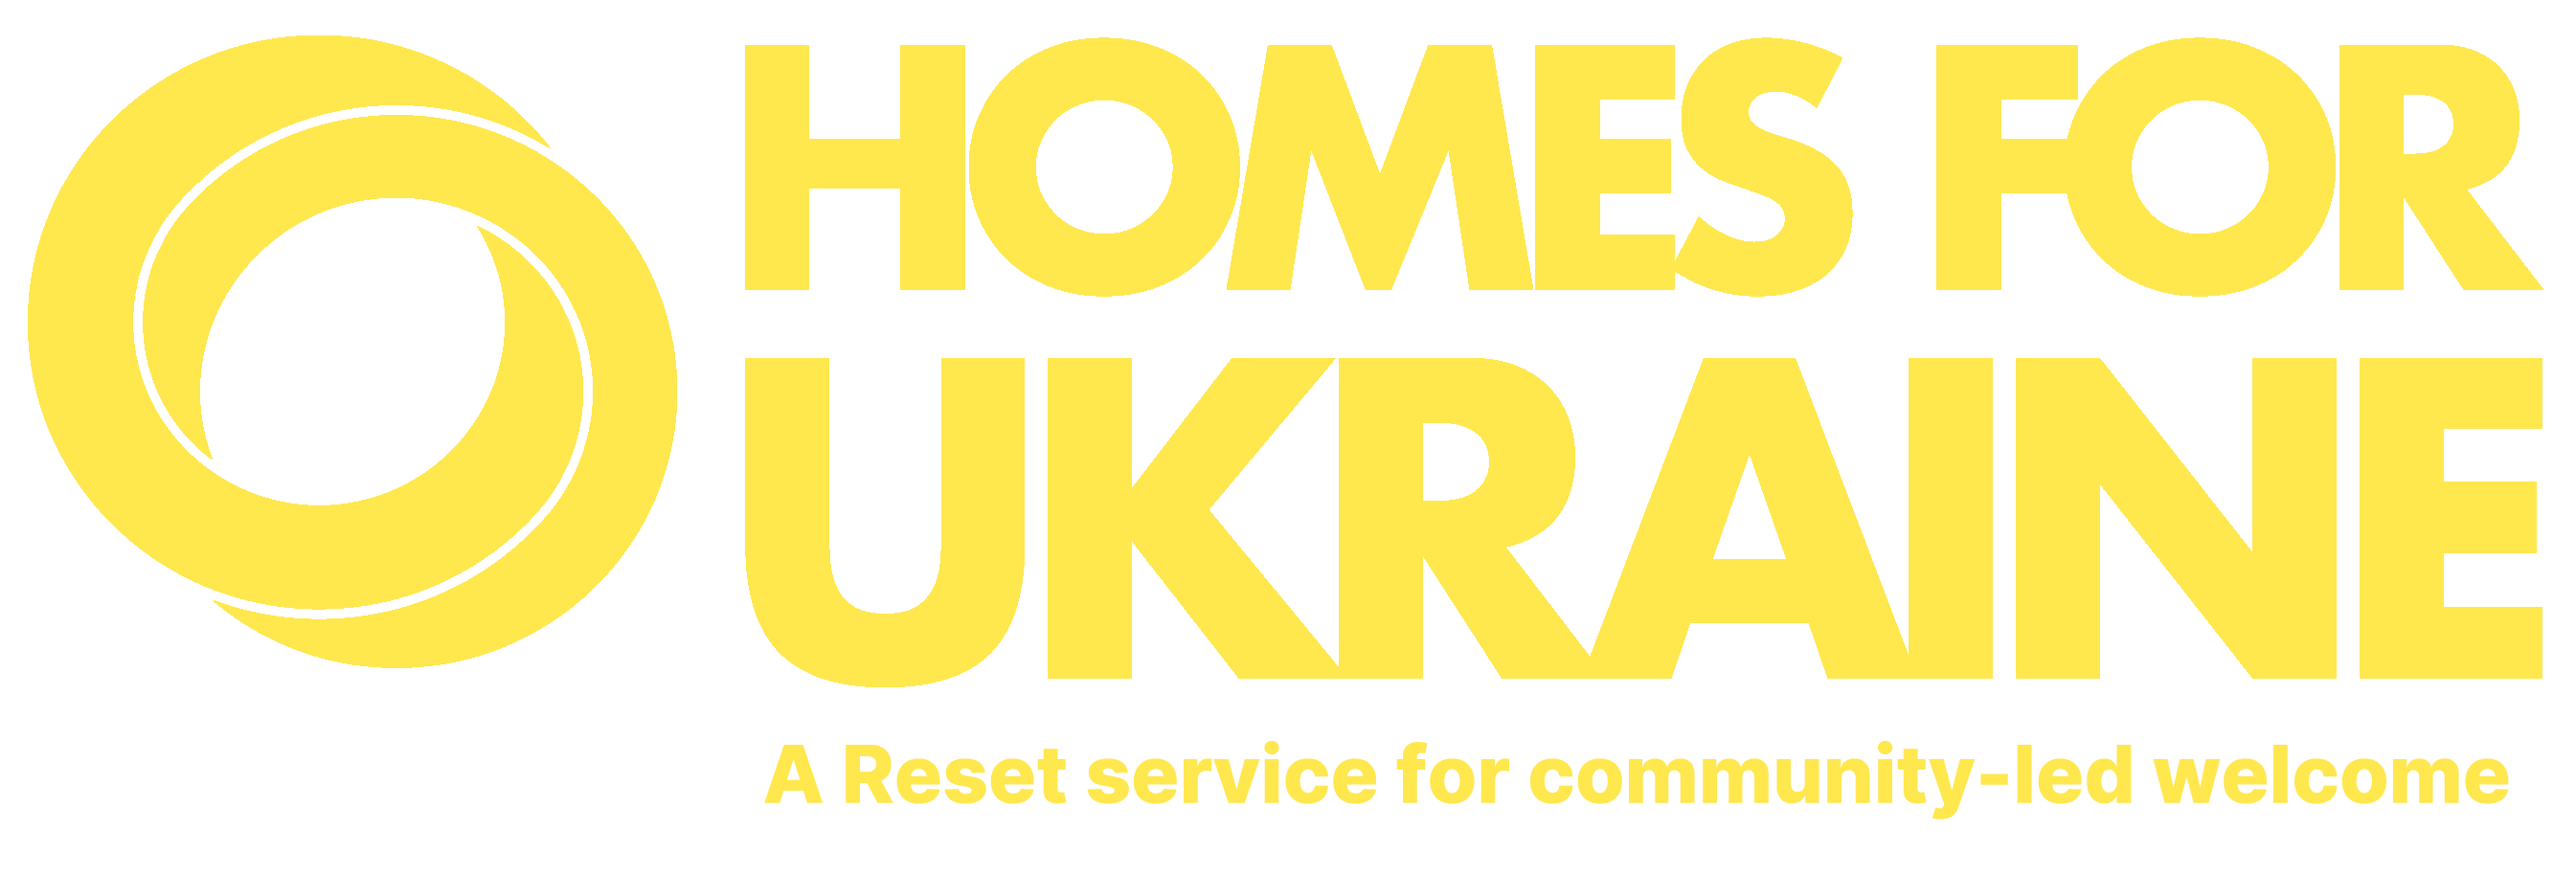 Homes for Ukraine Logo